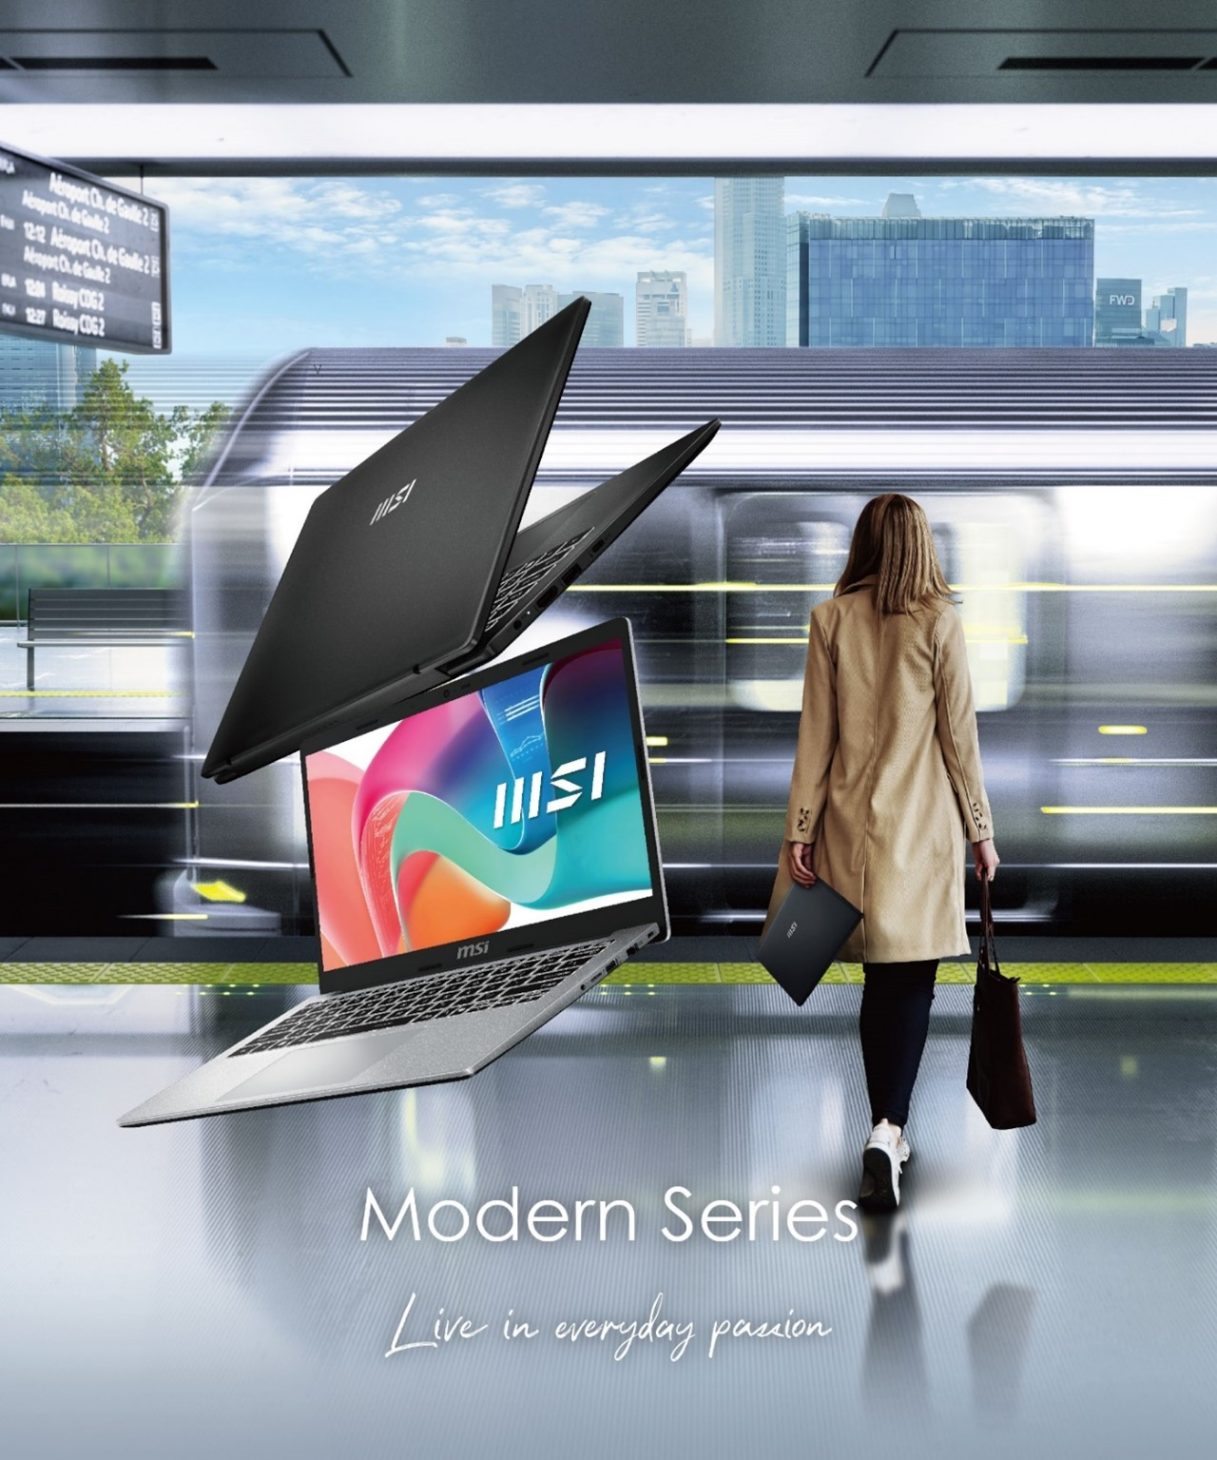 MSI công bố loạt laptop mới đạt chuẩn AI+ với vi xử lý mới nhất - msi laptop modern